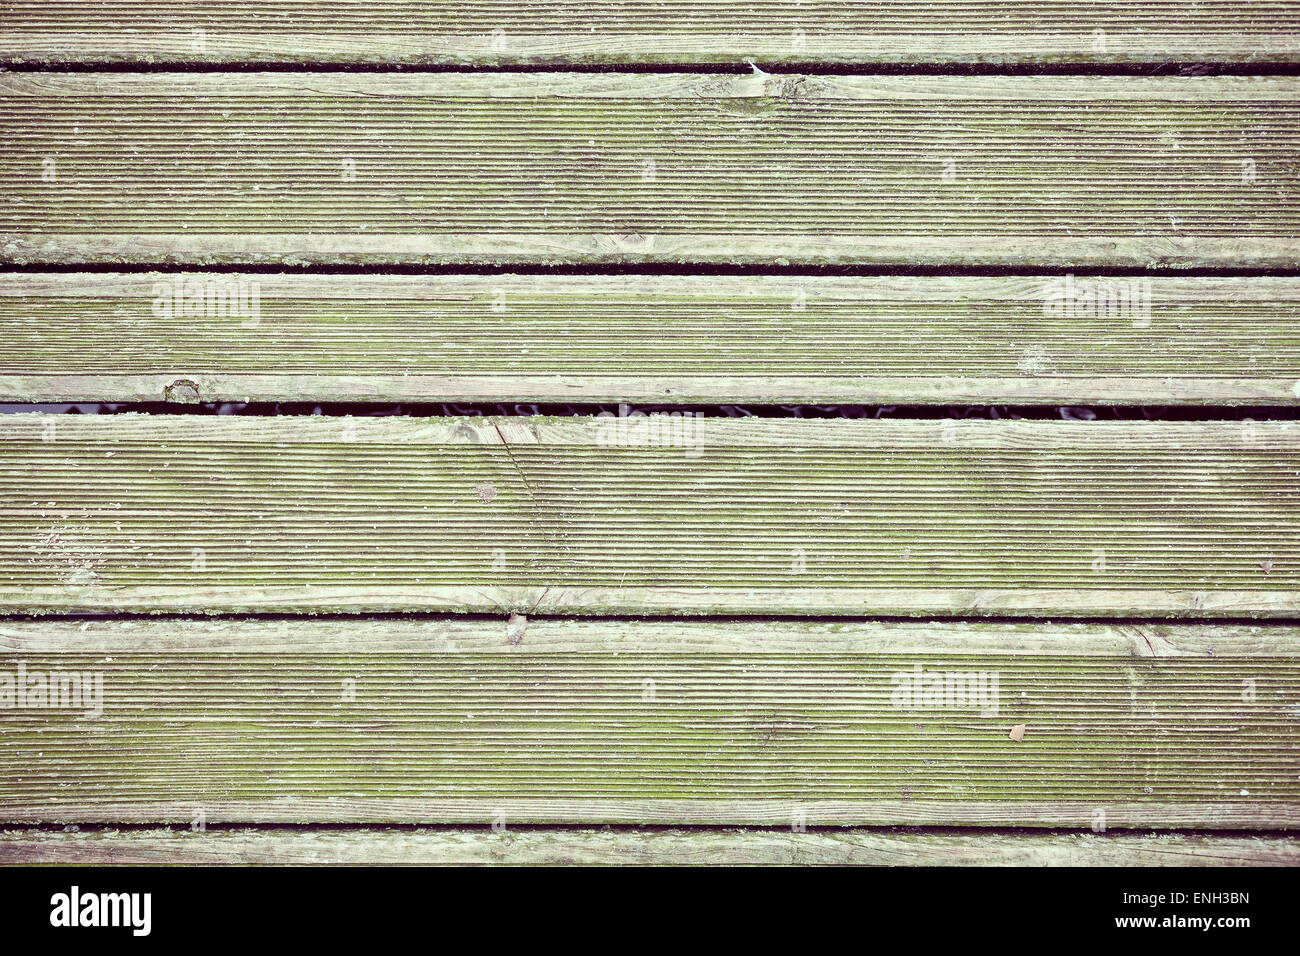 Retro-Stil alten hölzernen Grunge Pier Fußboden, Hintergrund oder Textur. Stockfoto